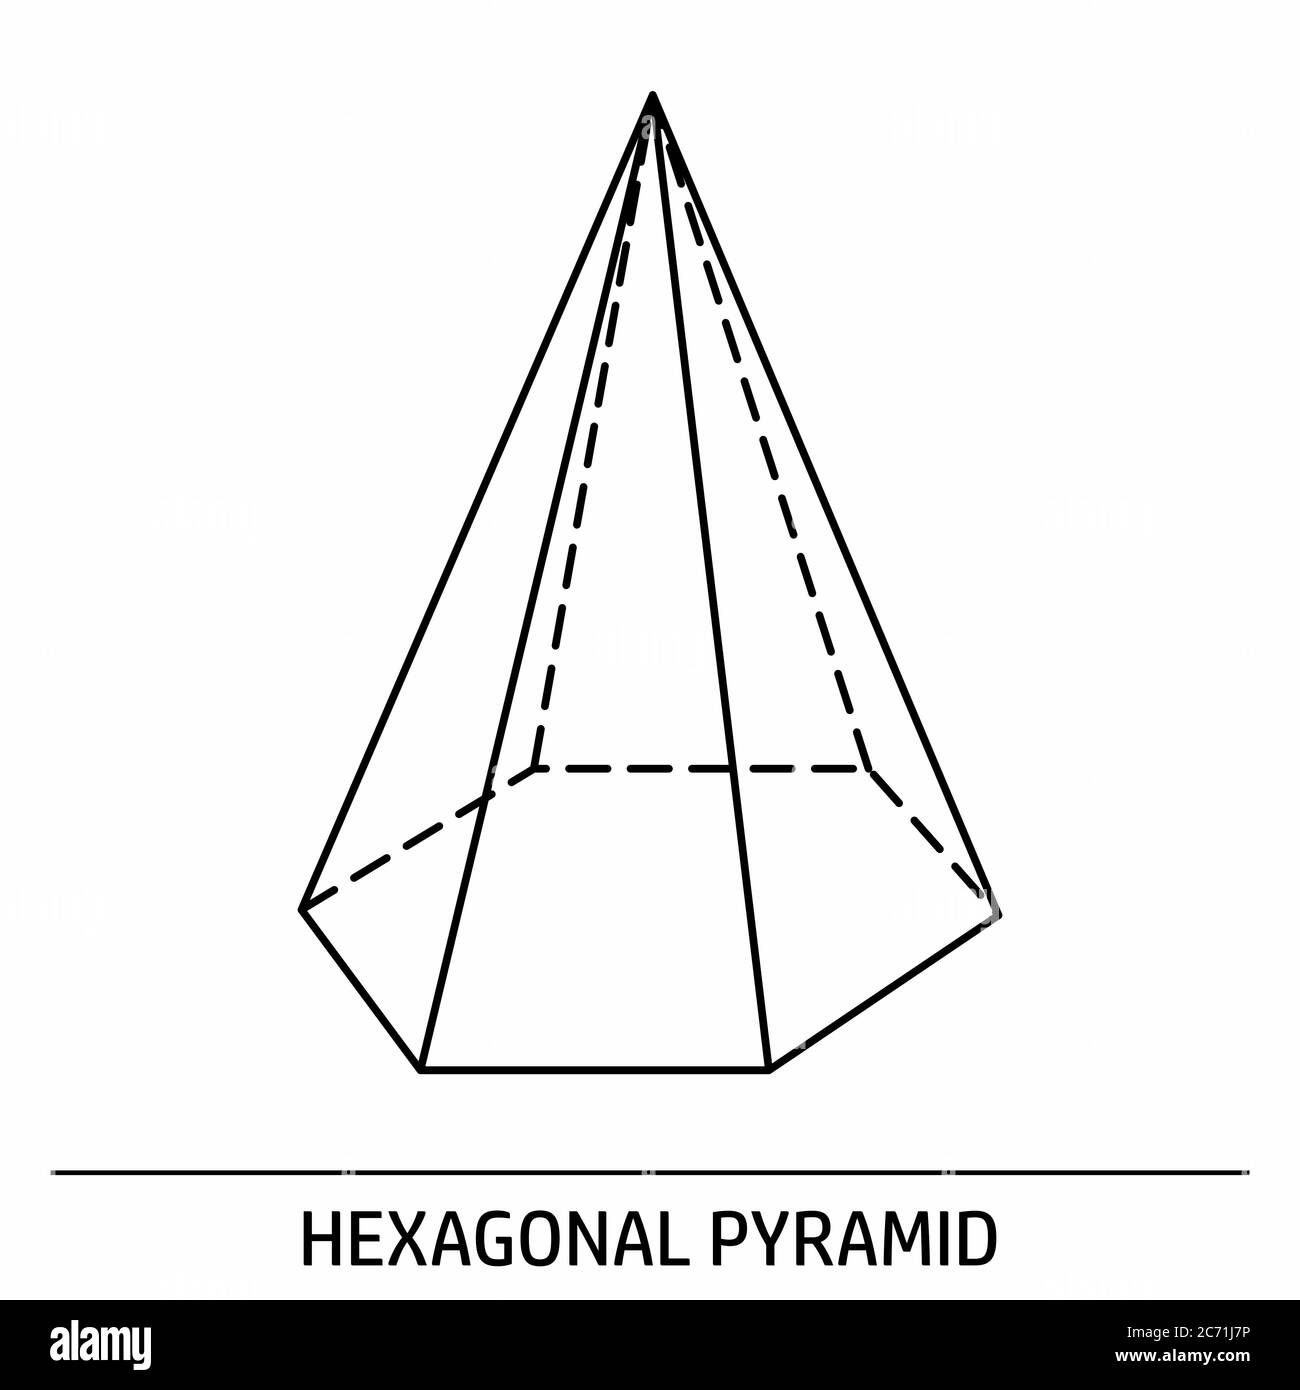 Hexagonal Pyramid outline icon Stock Vector